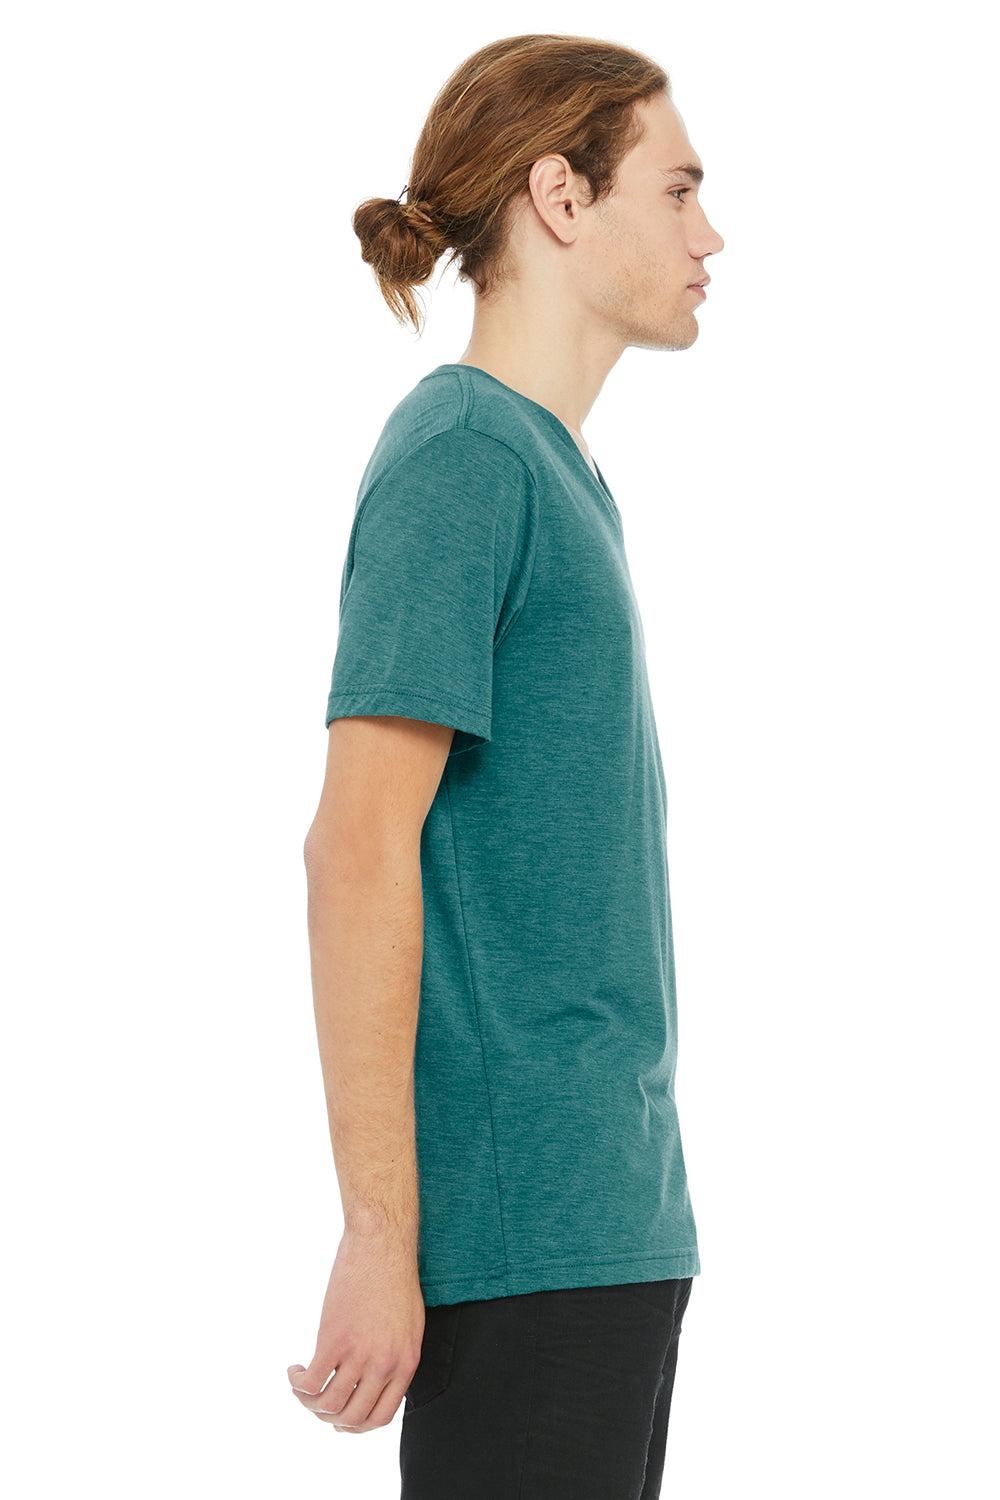 Bella + Canvas BC3415/3415C/3415 Mens Short Sleeve V-Neck T-Shirt Teal Green Model Side